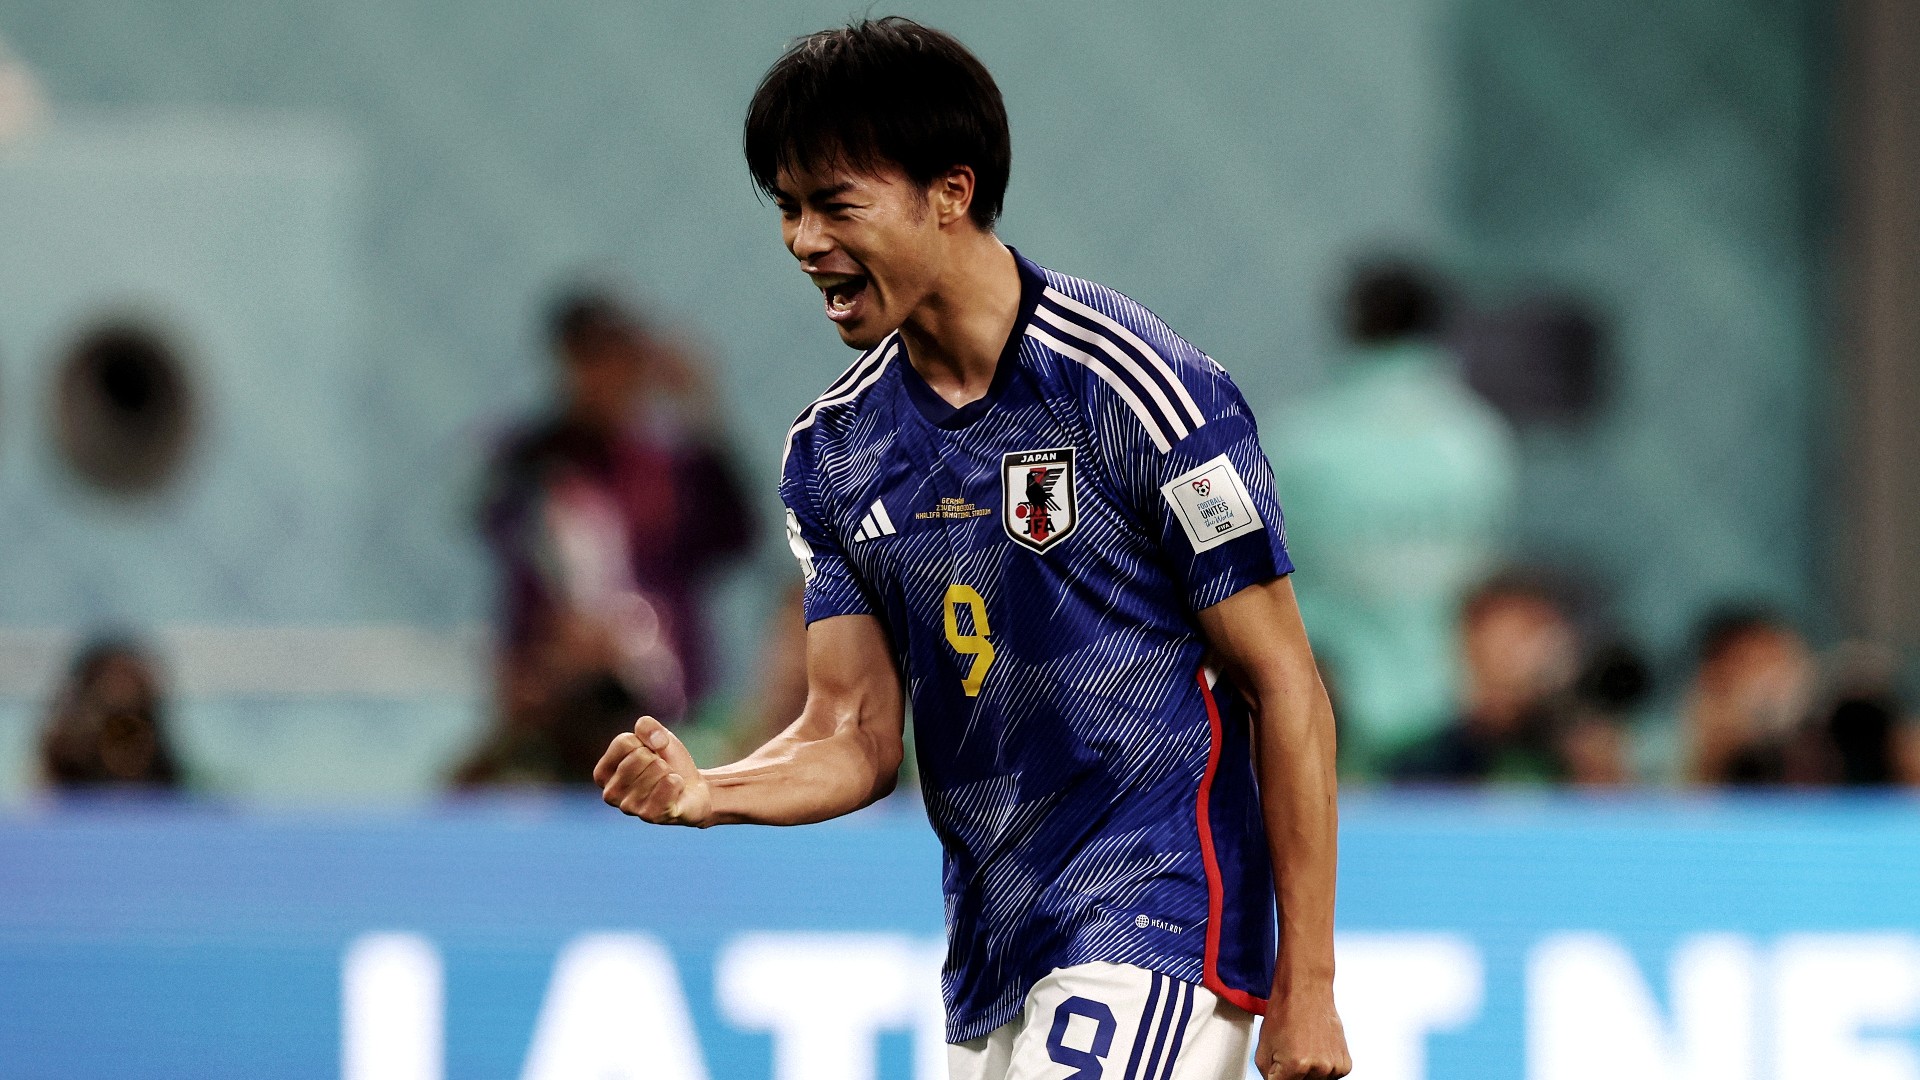 サッカー日本代表三苫薫選手9番レプリカユニフォーム | www 